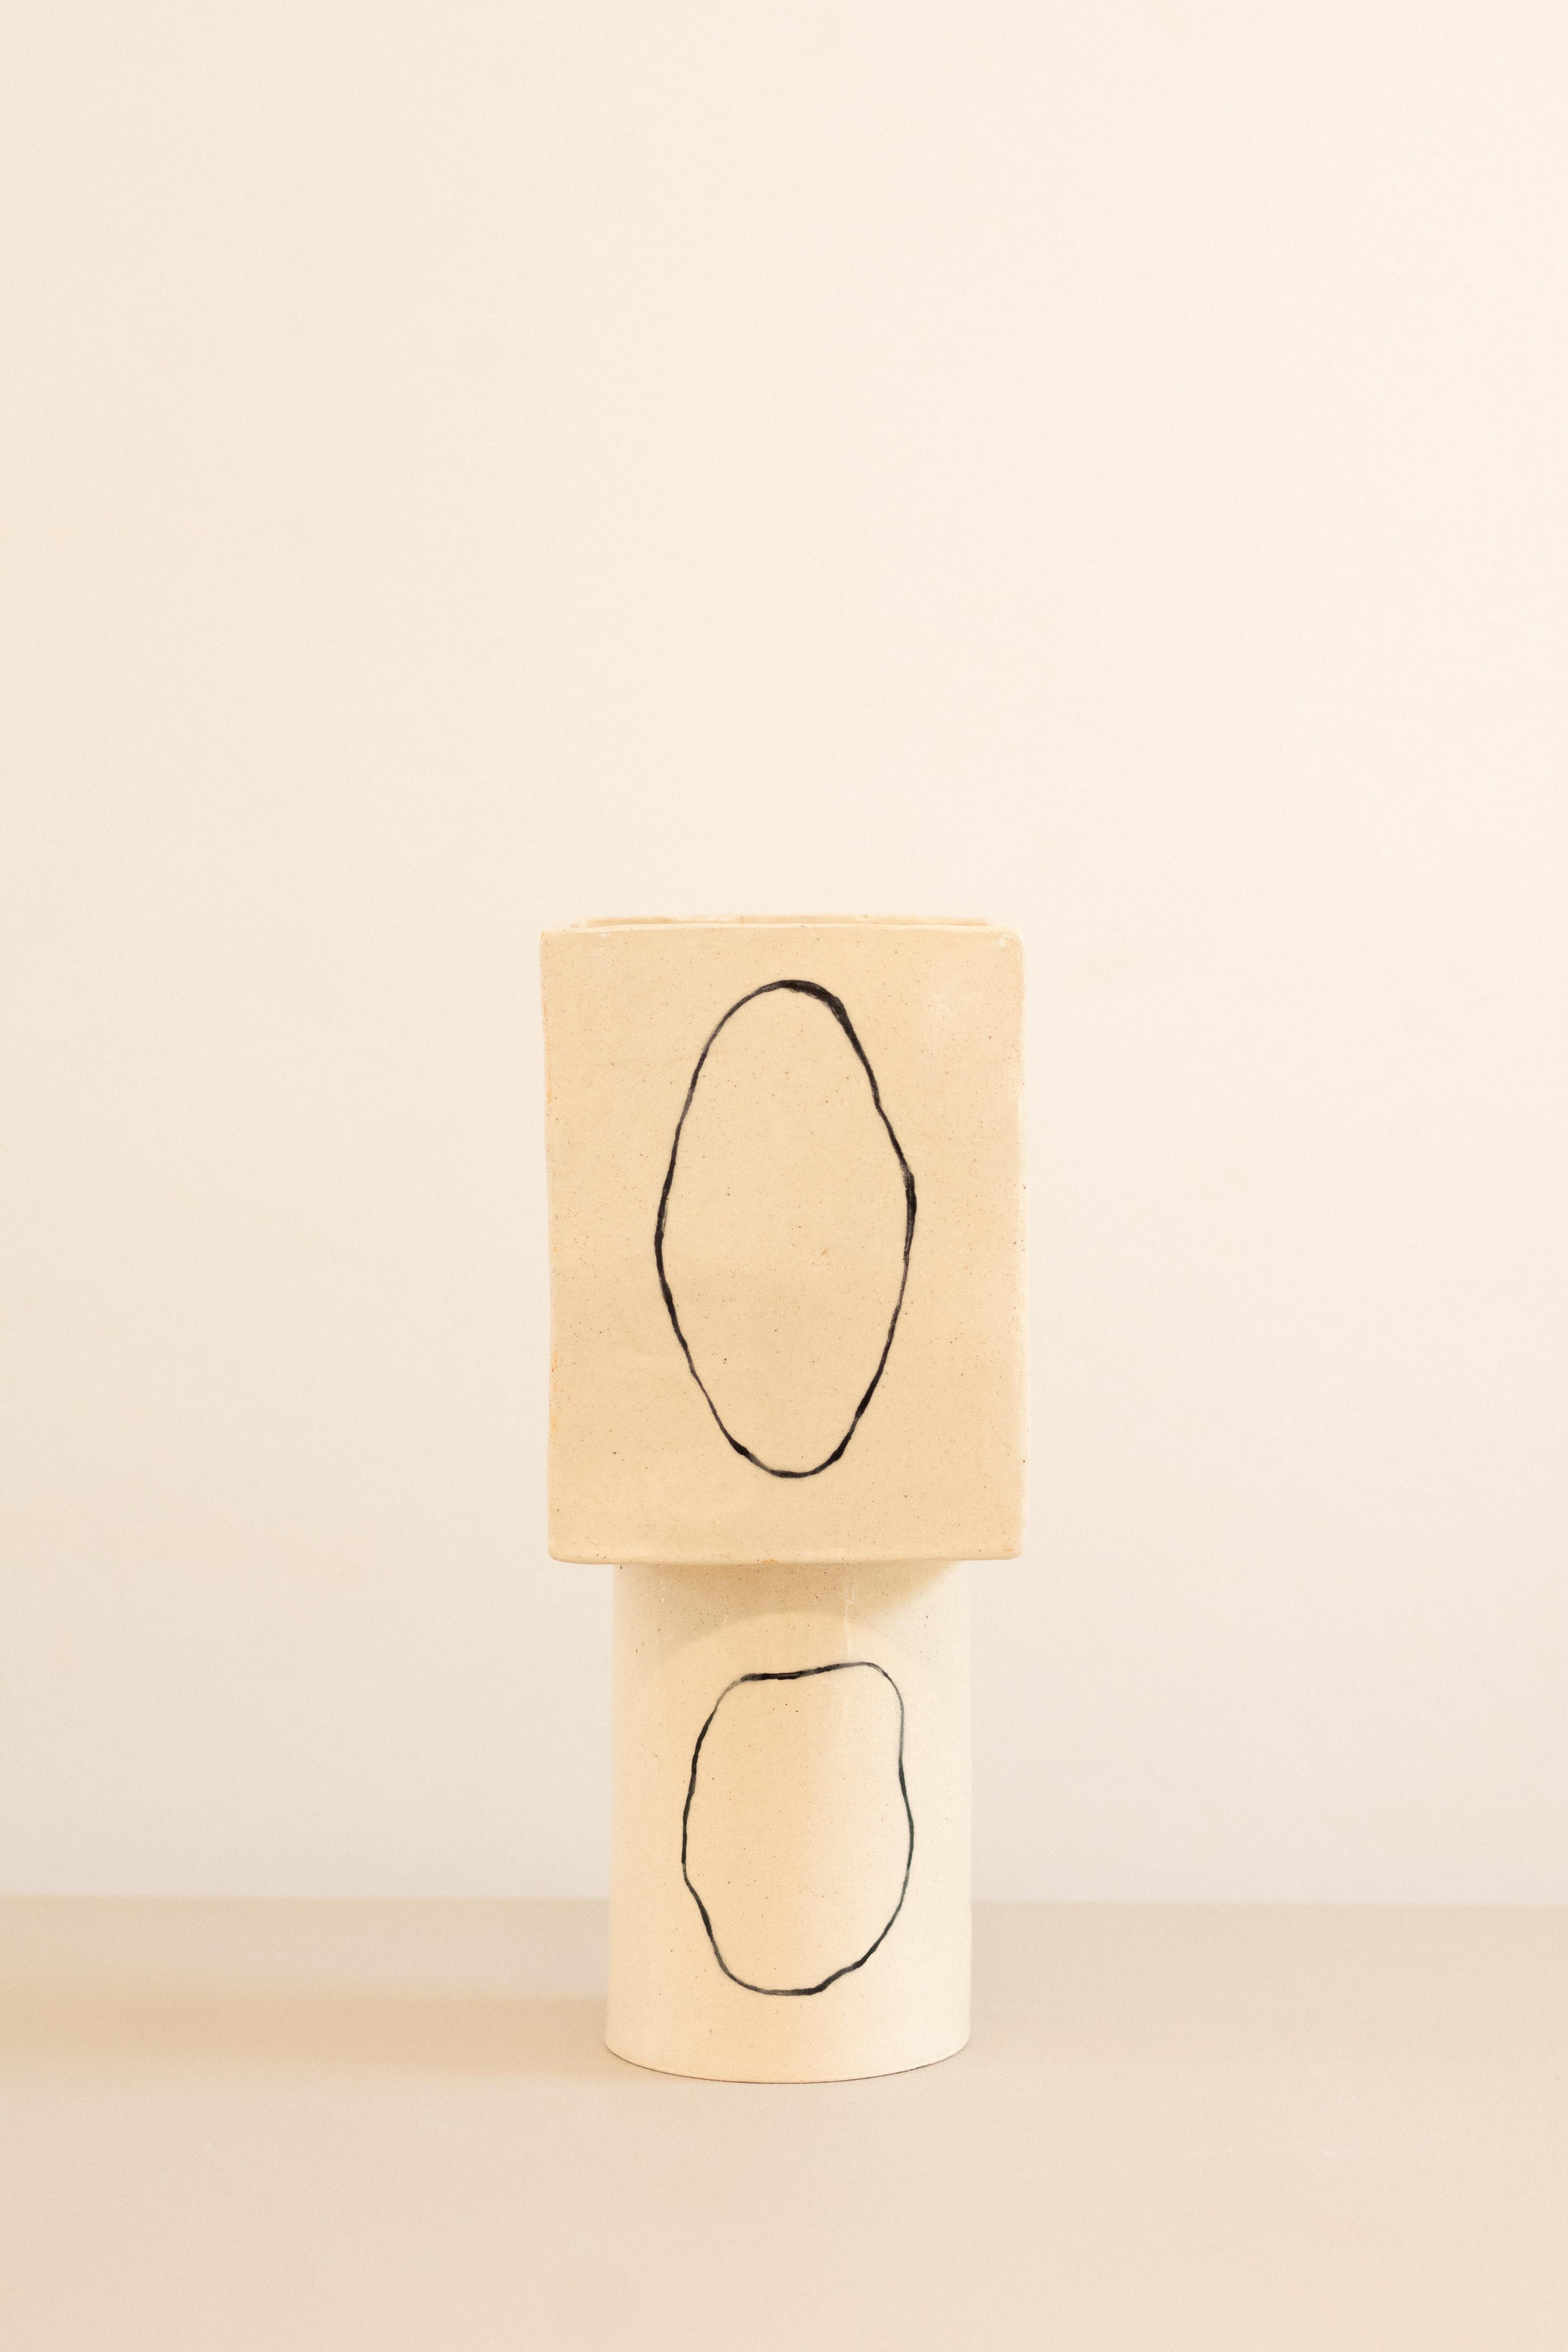 contemporary white ceramic vase inspired in Miró - ZERO serie - obj01, brazil  For Sale 2